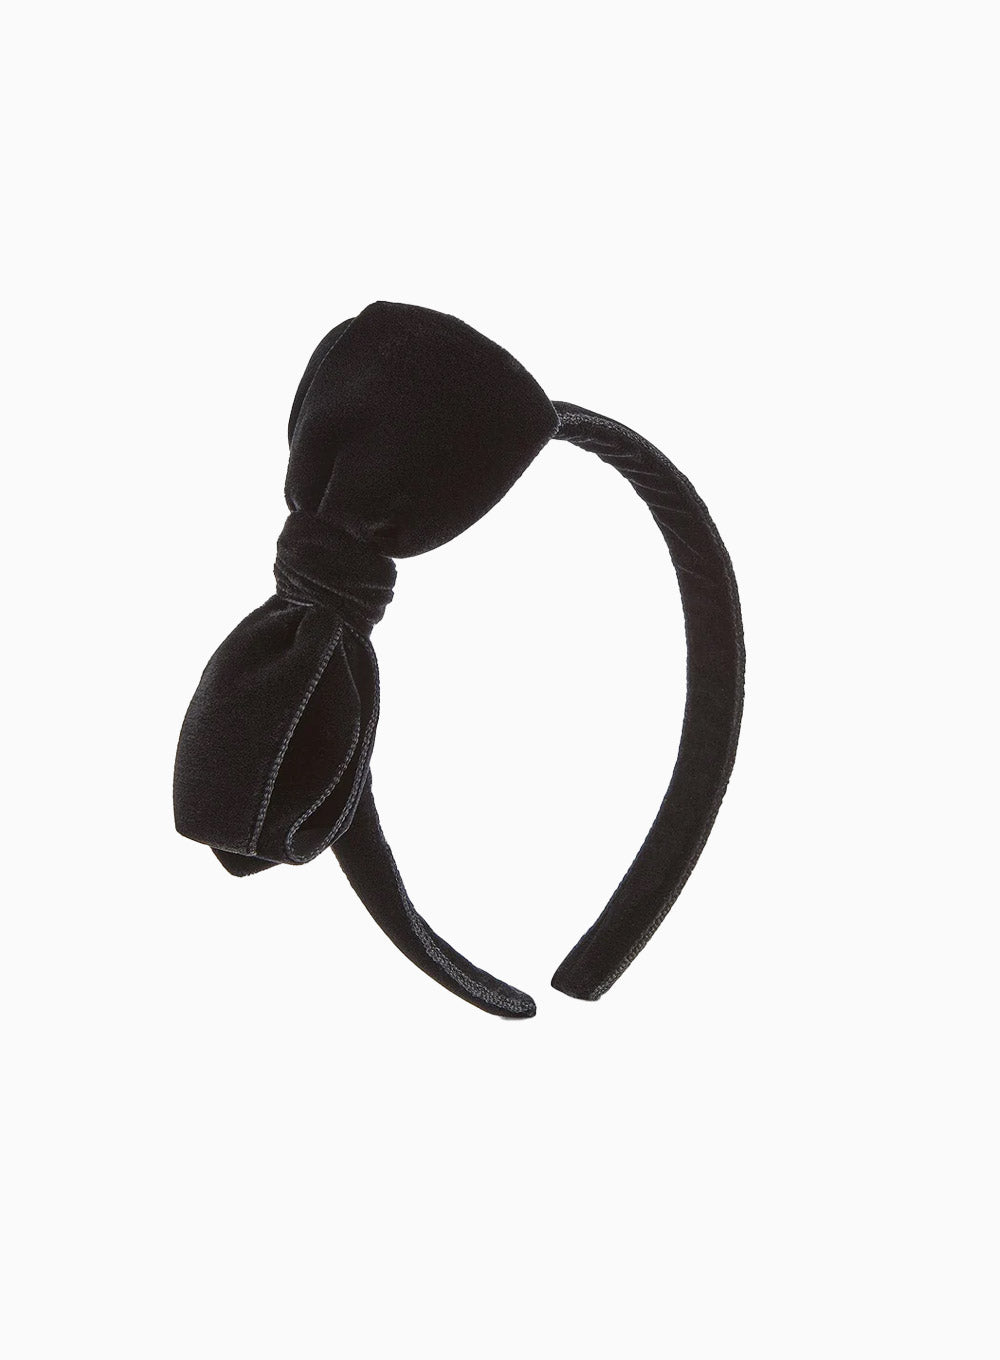 alice velvet hair bow - $26